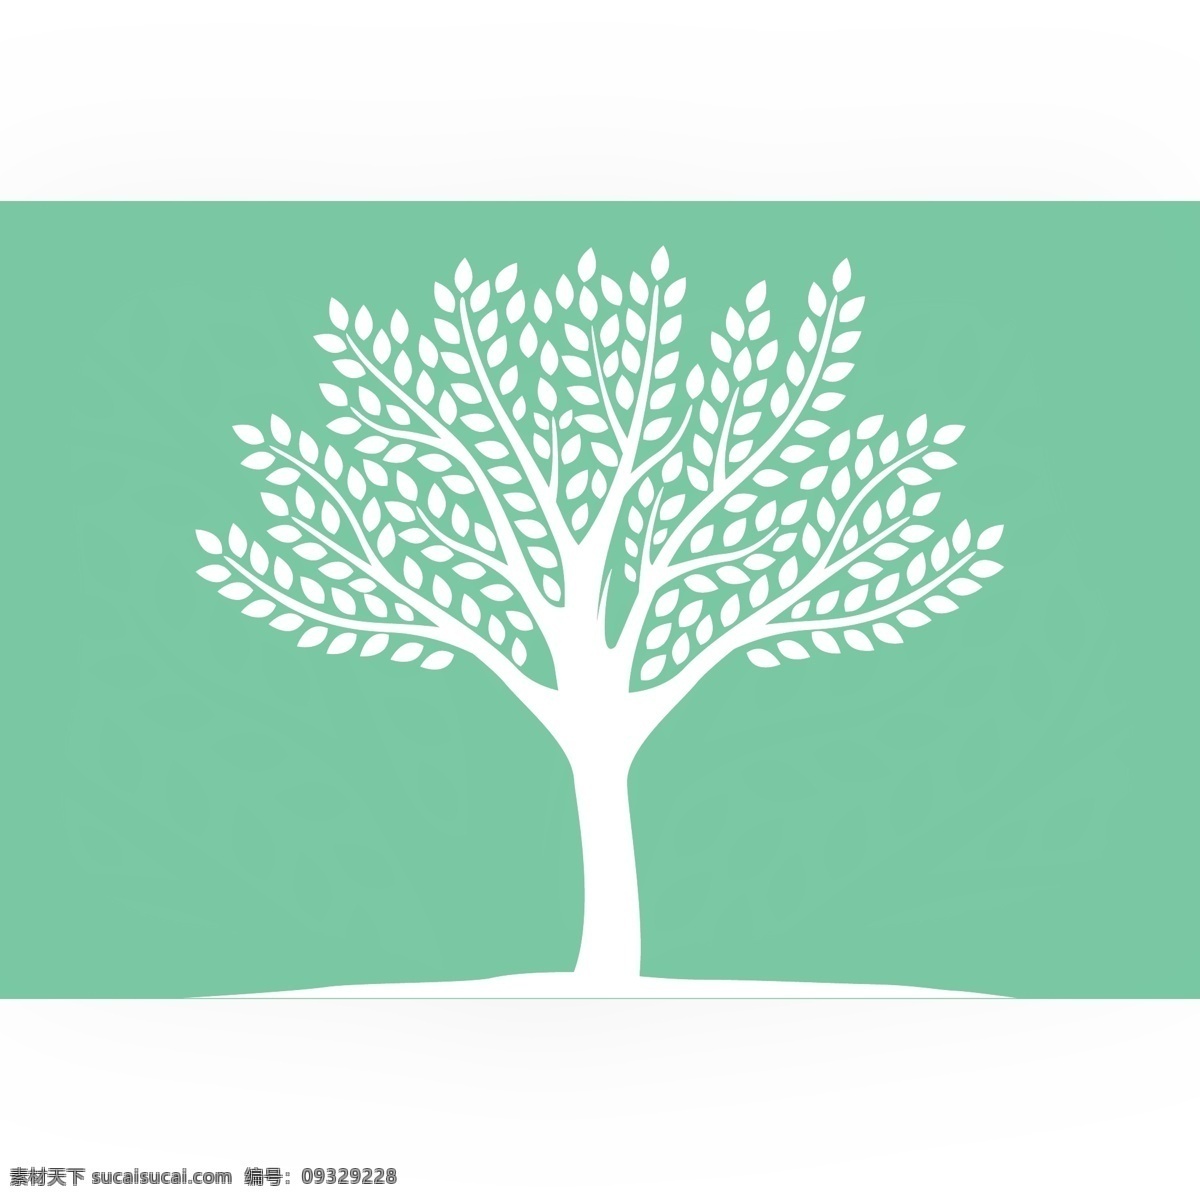 载体 生态 友好 树 剪影 图标 生态树 生态学 环境 绿色的树叶 叶 自然 程式化的树 夏季 树树